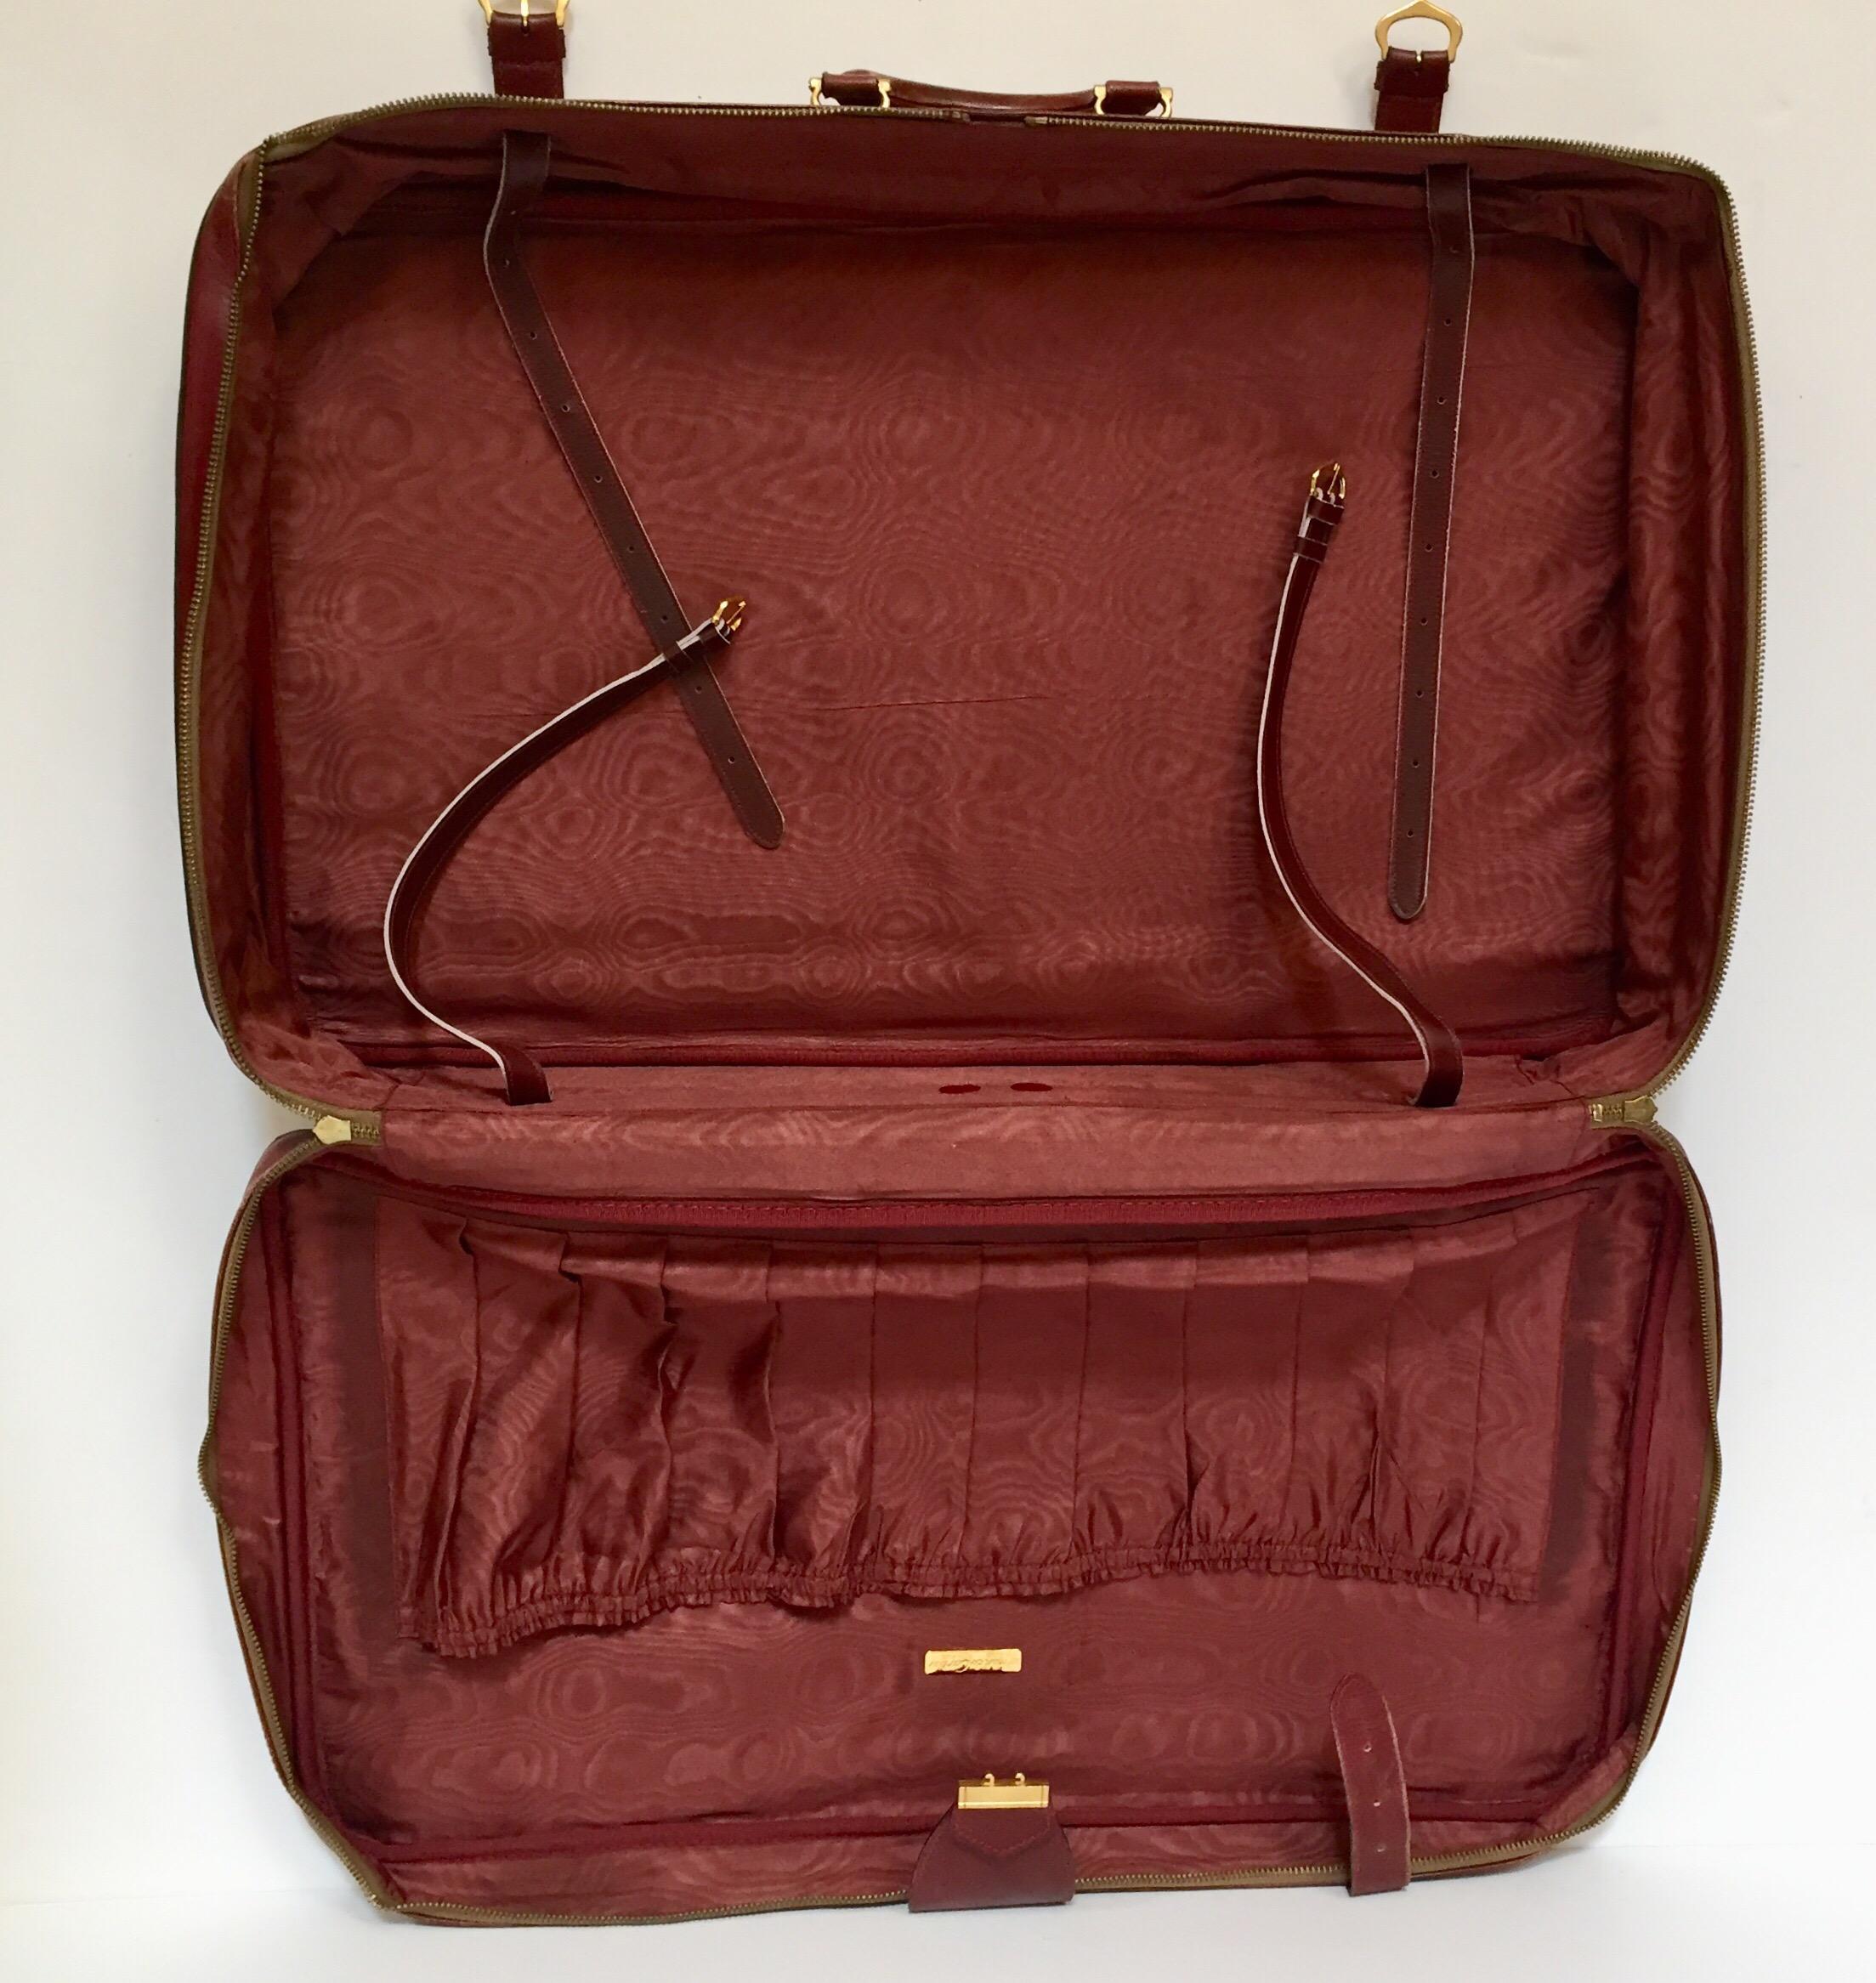 Les Must de Cartier Vintage Leather Suitcase Burgundy Bordeaux Luggage For Sale 4